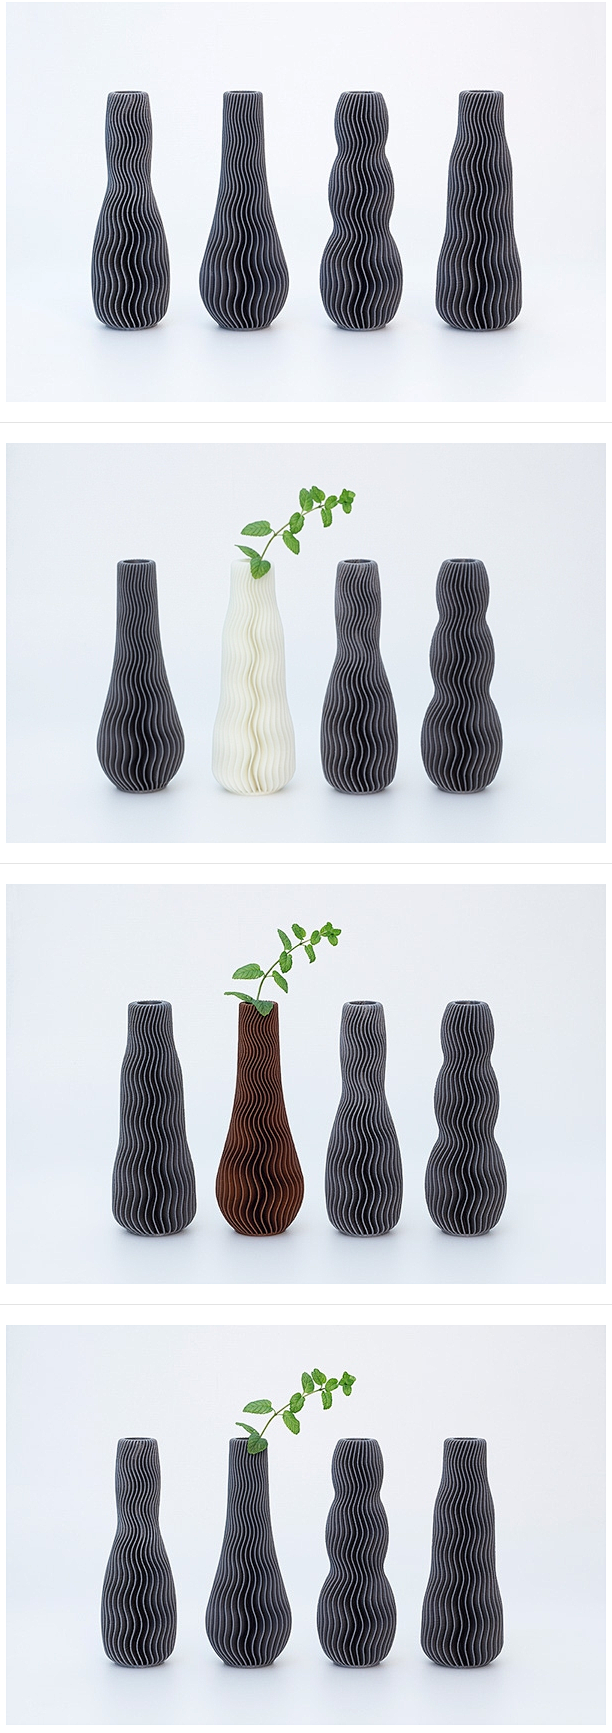 3D 打印花瓶设计 生活圈 展示 设计时...